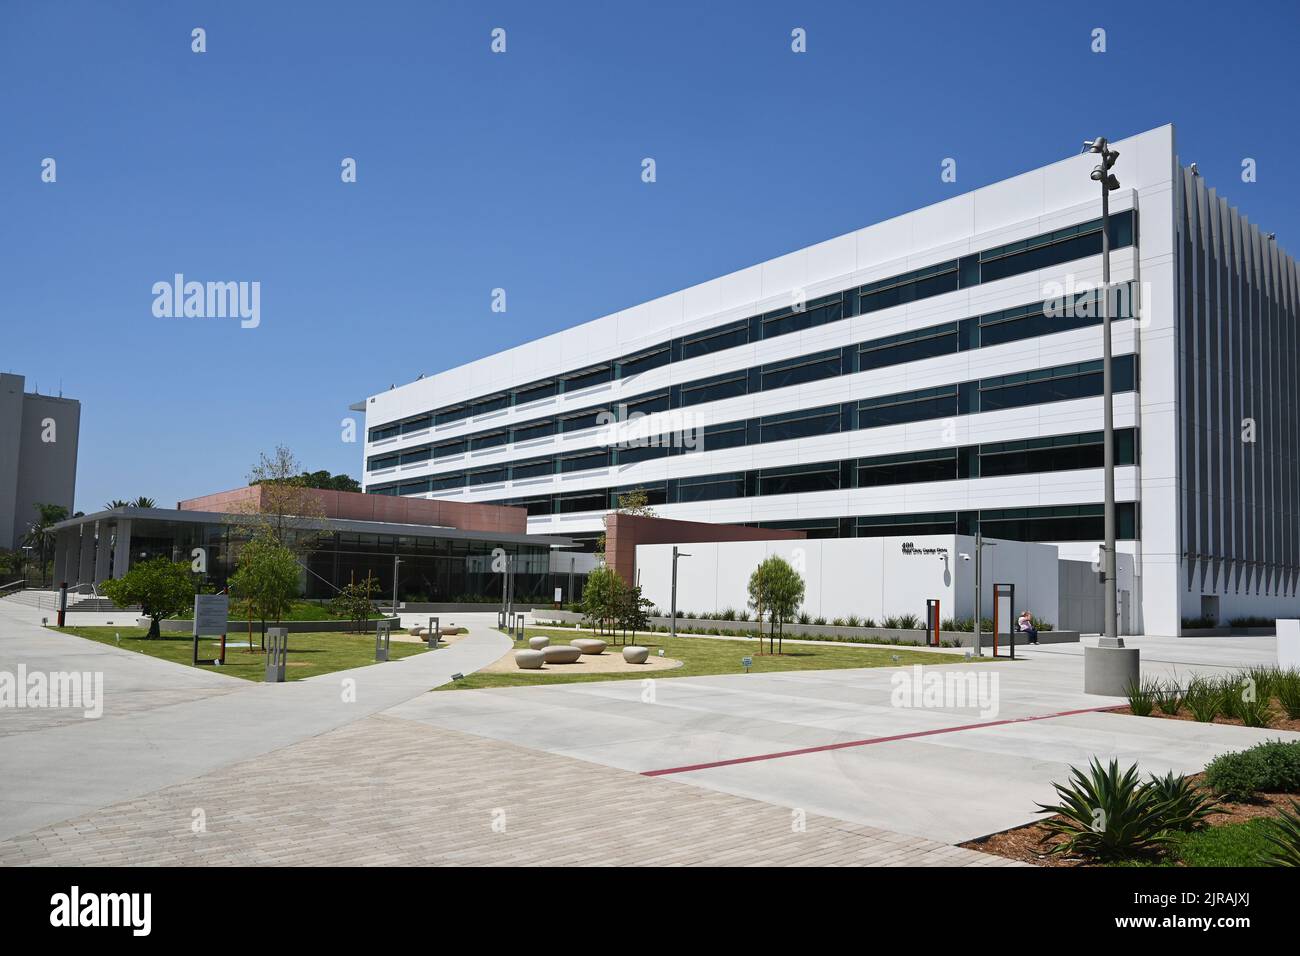 SANTA ANA, KALIFORNIEN - 22. AUGUST 2022: Das Orange County Hall of Administration Gebäude im Civic Center Bereich der Innenstadt von Santa Ana. Stockfoto